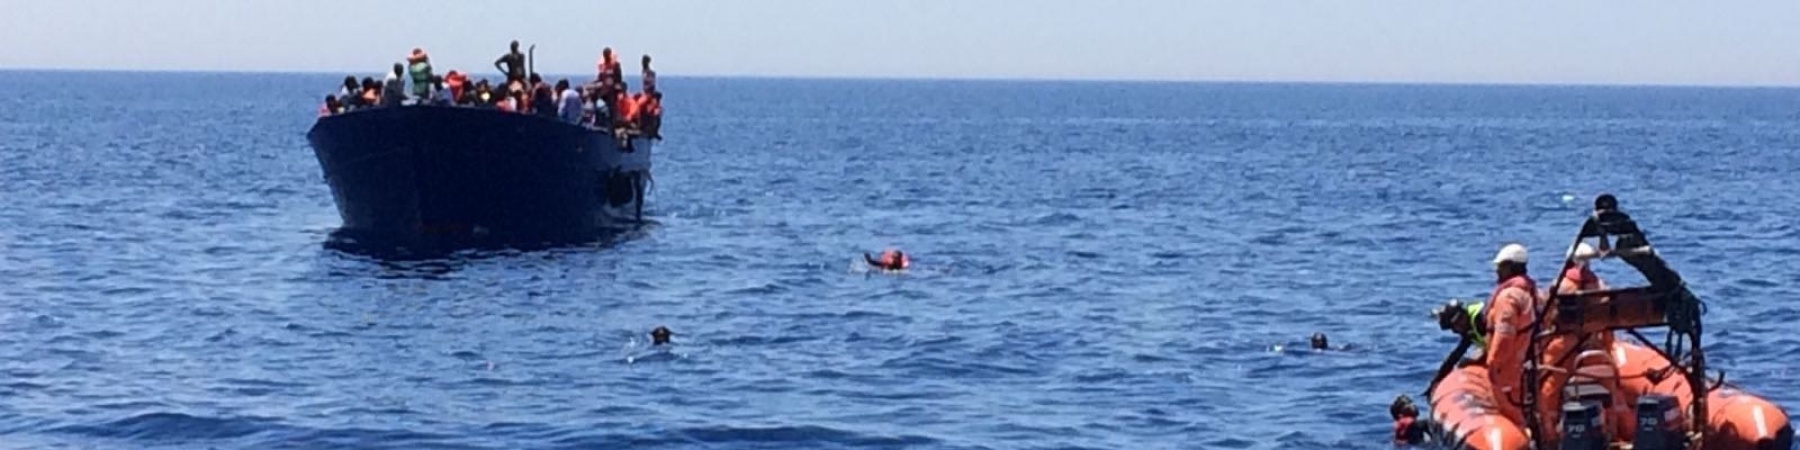 gommone-soccorso-barca-migranti-nel-mare